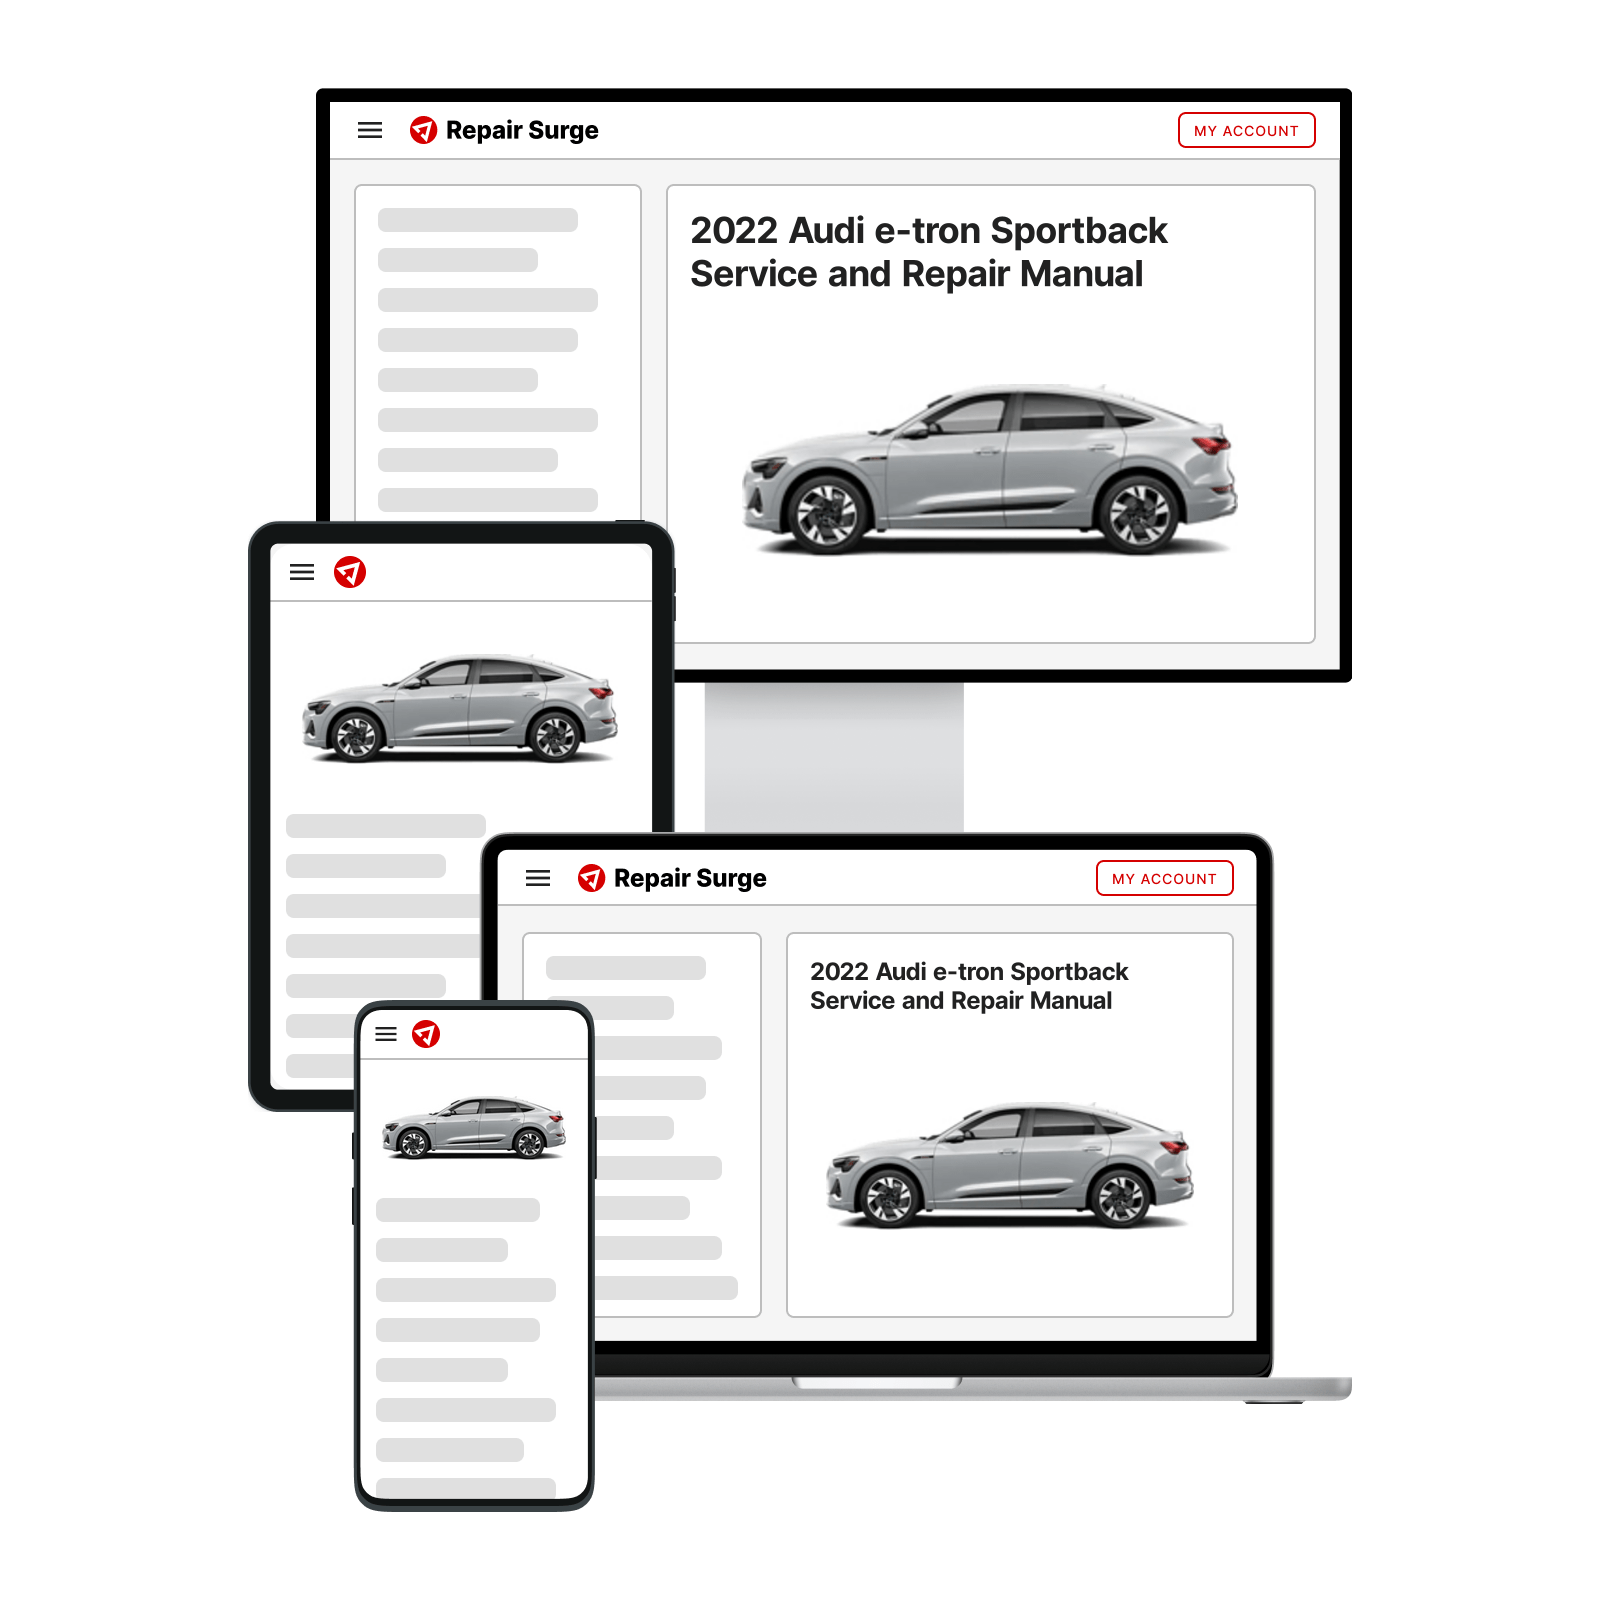 2022 Audi e-tron Sportback service and repair manual hero image